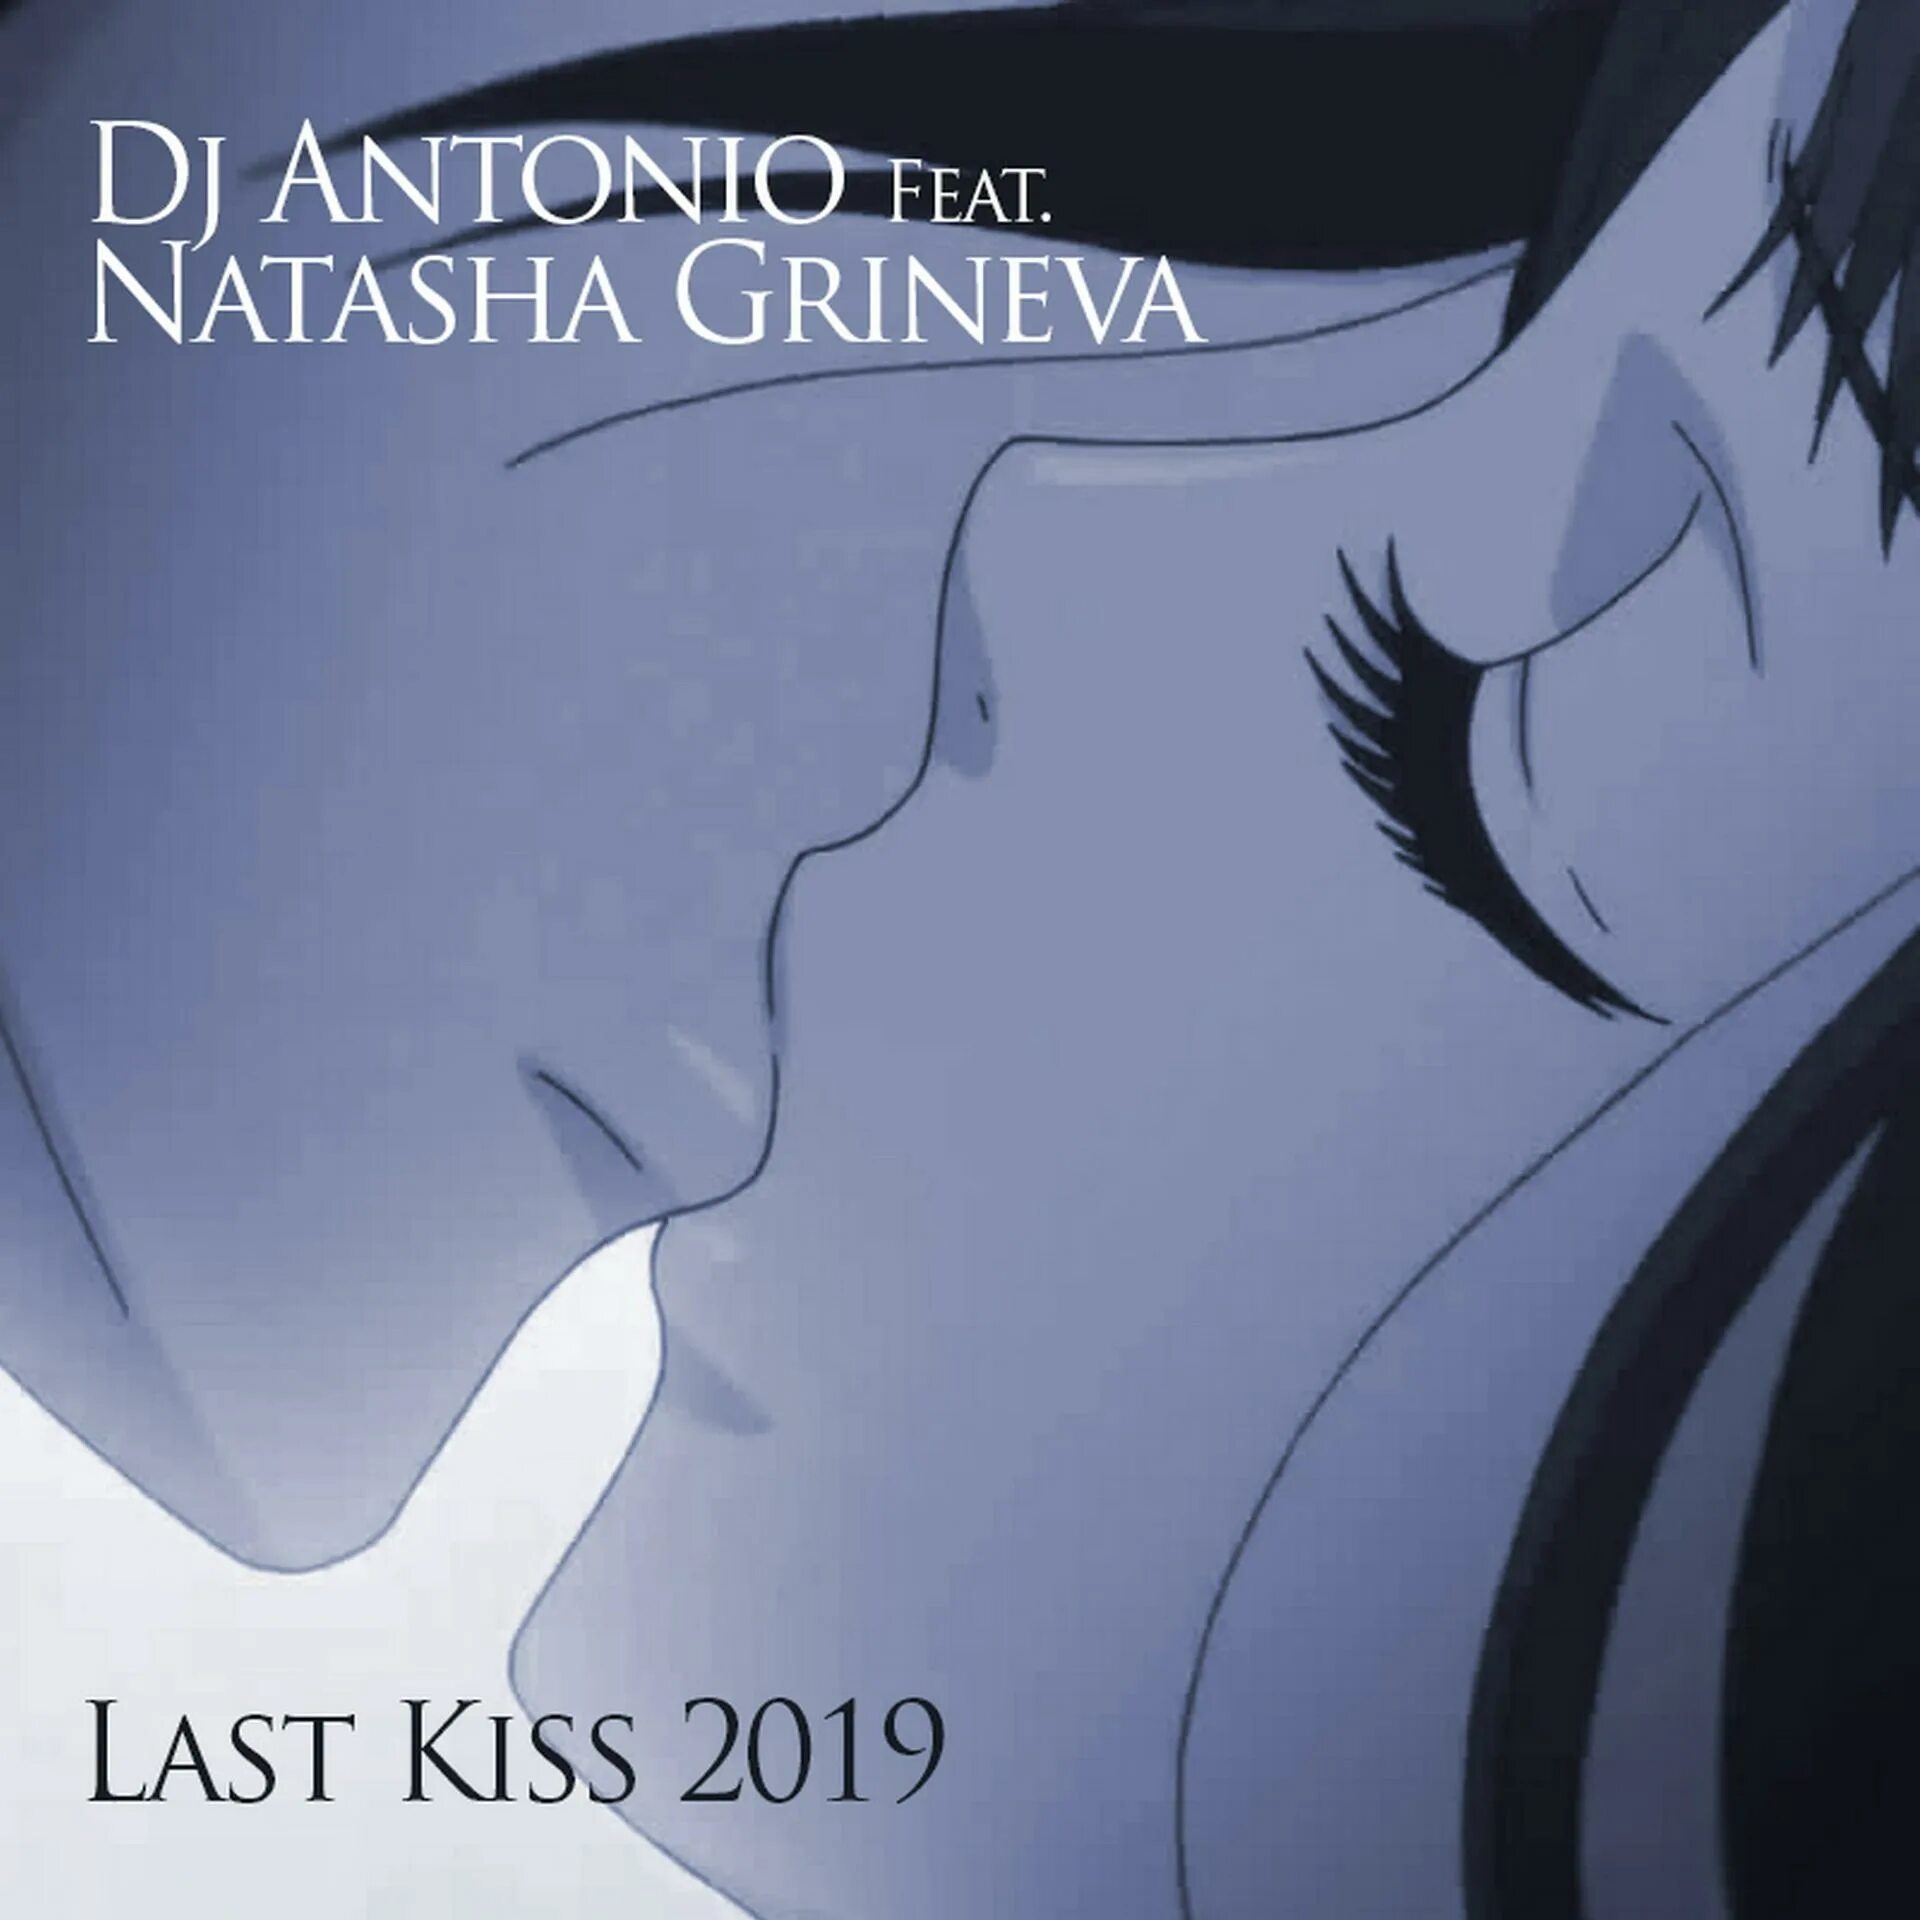 Песня наш последний поцелую клуба. Last Kiss 2019. DJ Antonio & Natasha Grineva - last Kiss 2019. Поцелуй обложка. DJ Antonio, Natasha Grineva.